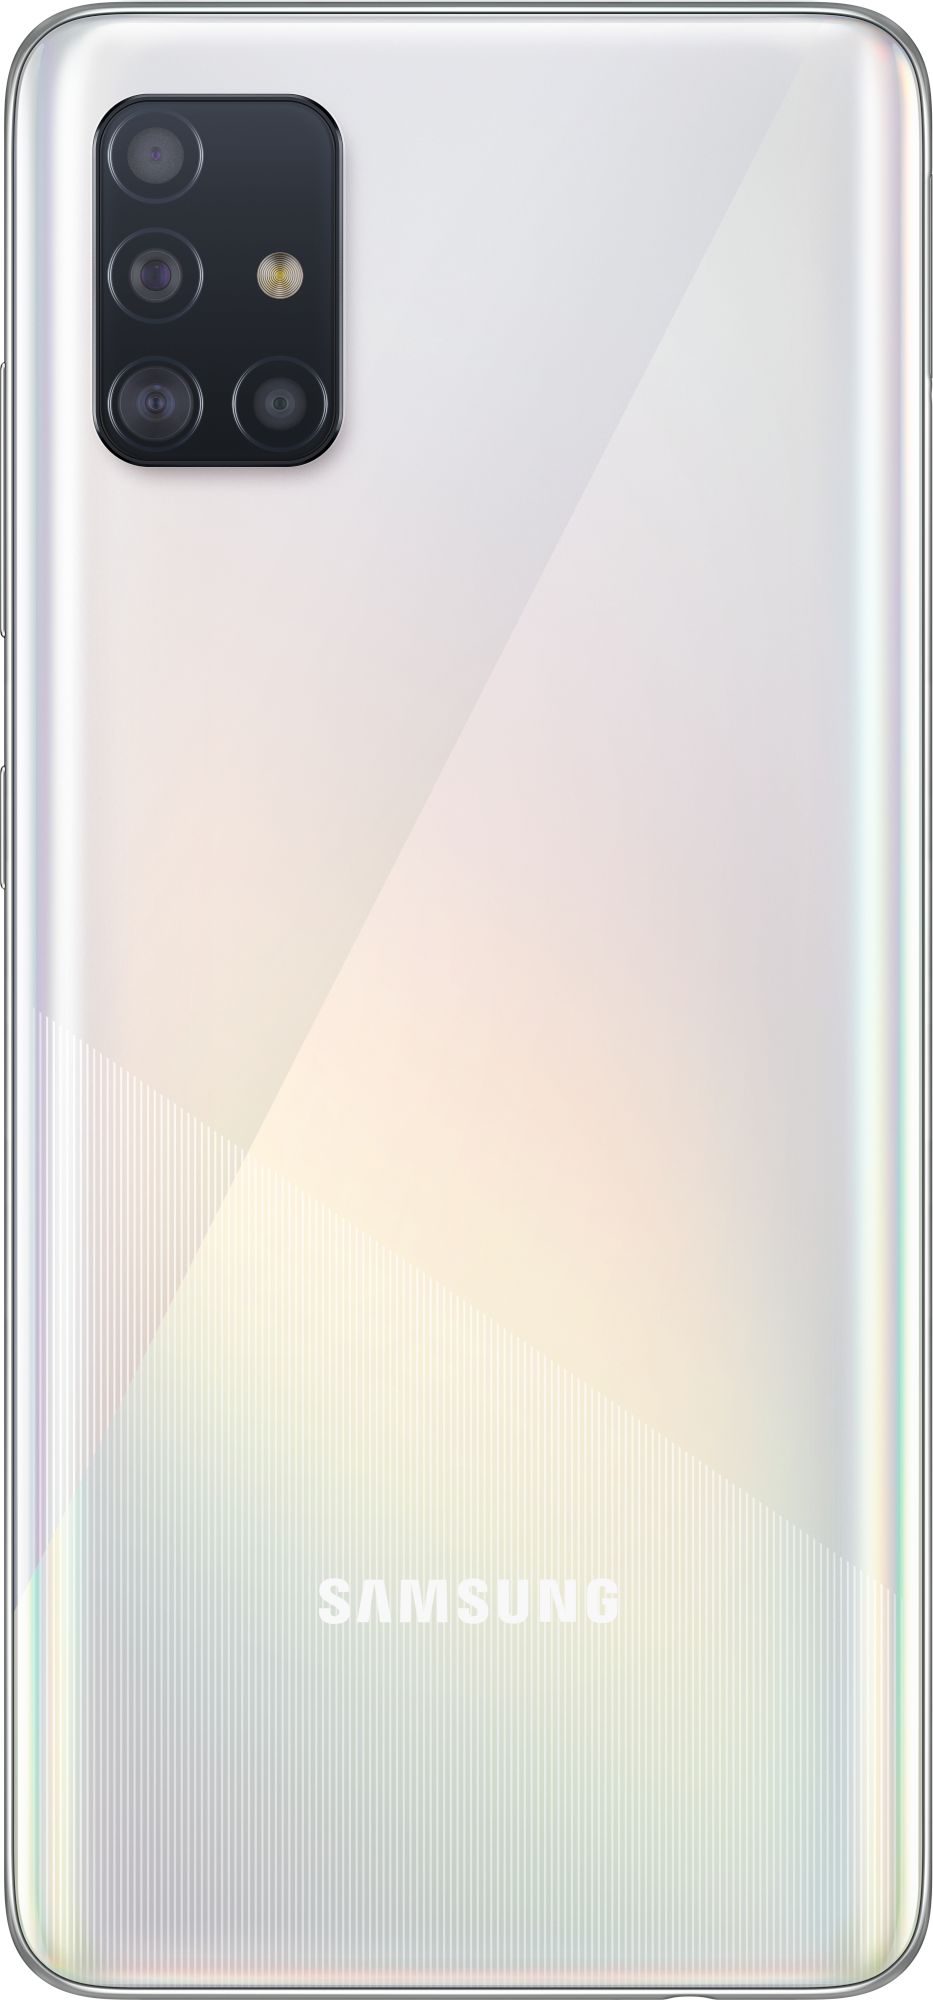 Samsung Galaxy A51 64GB_hor White